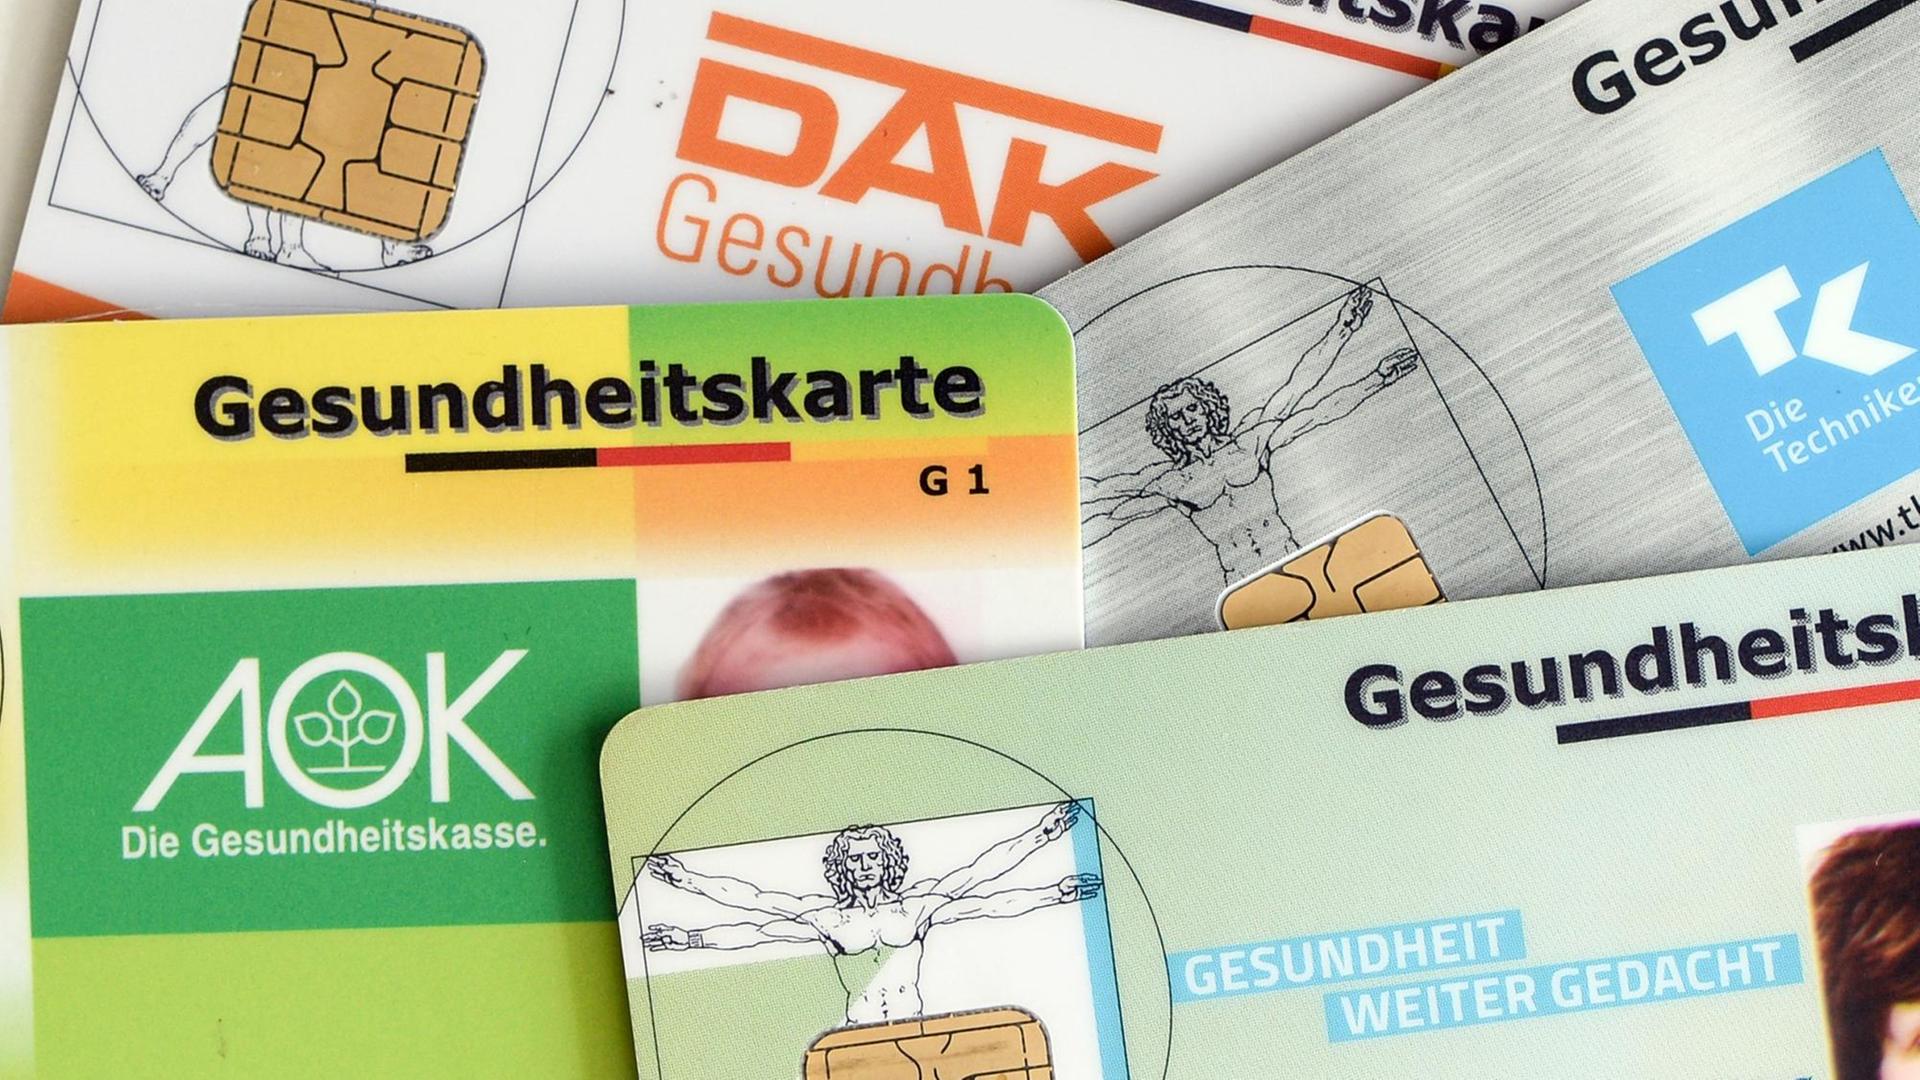 Versichertenkarten (AOK, TK, BarmerGEK, DAK) liegen übereinander.